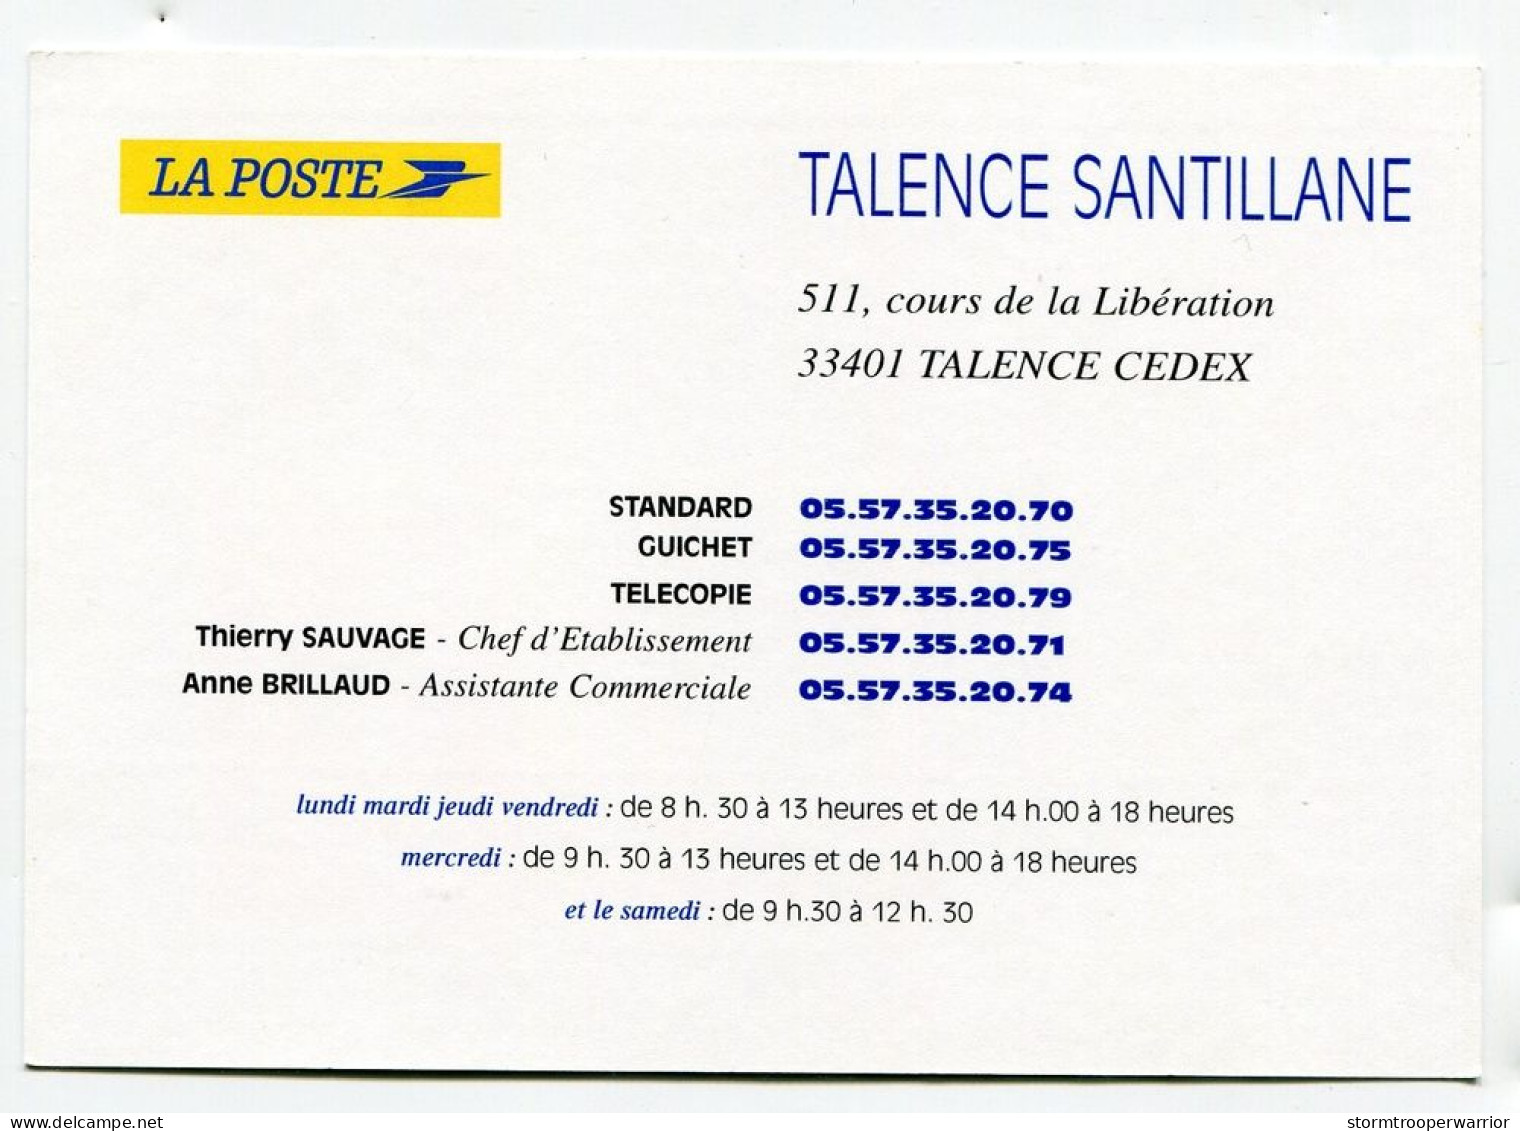 Timbre - Les Postiers De Talence Santillane Vous Souhaitent De Bonnes Vacances - La Poste - Poste & Postini